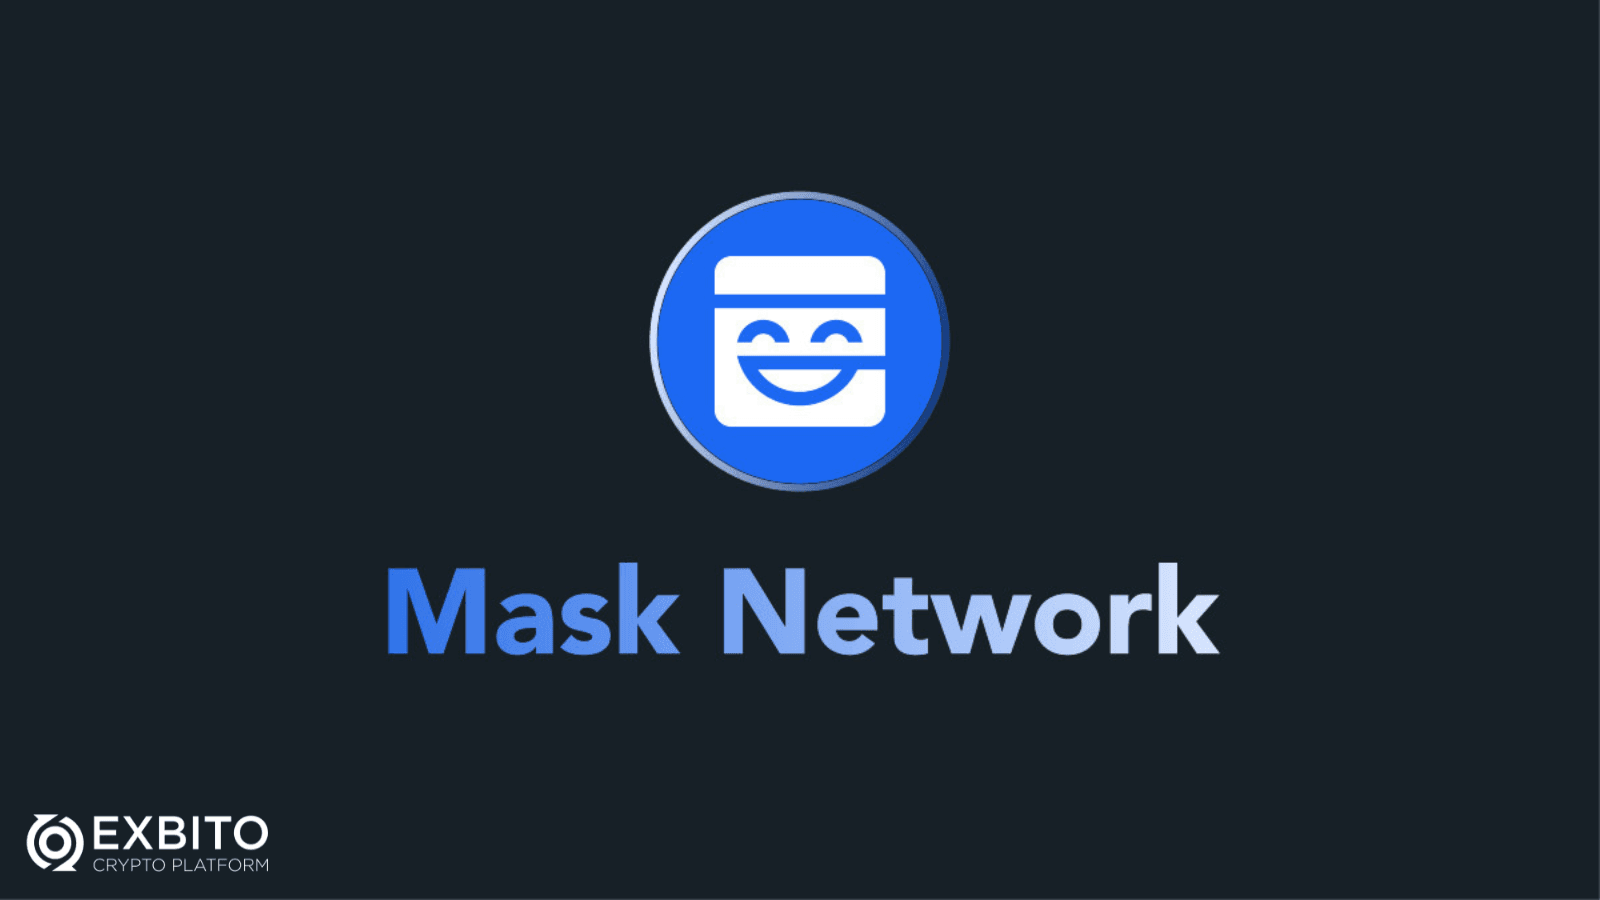 مسک نتورک (Mask Network) چیست و چه کاربردهایی دارد؟